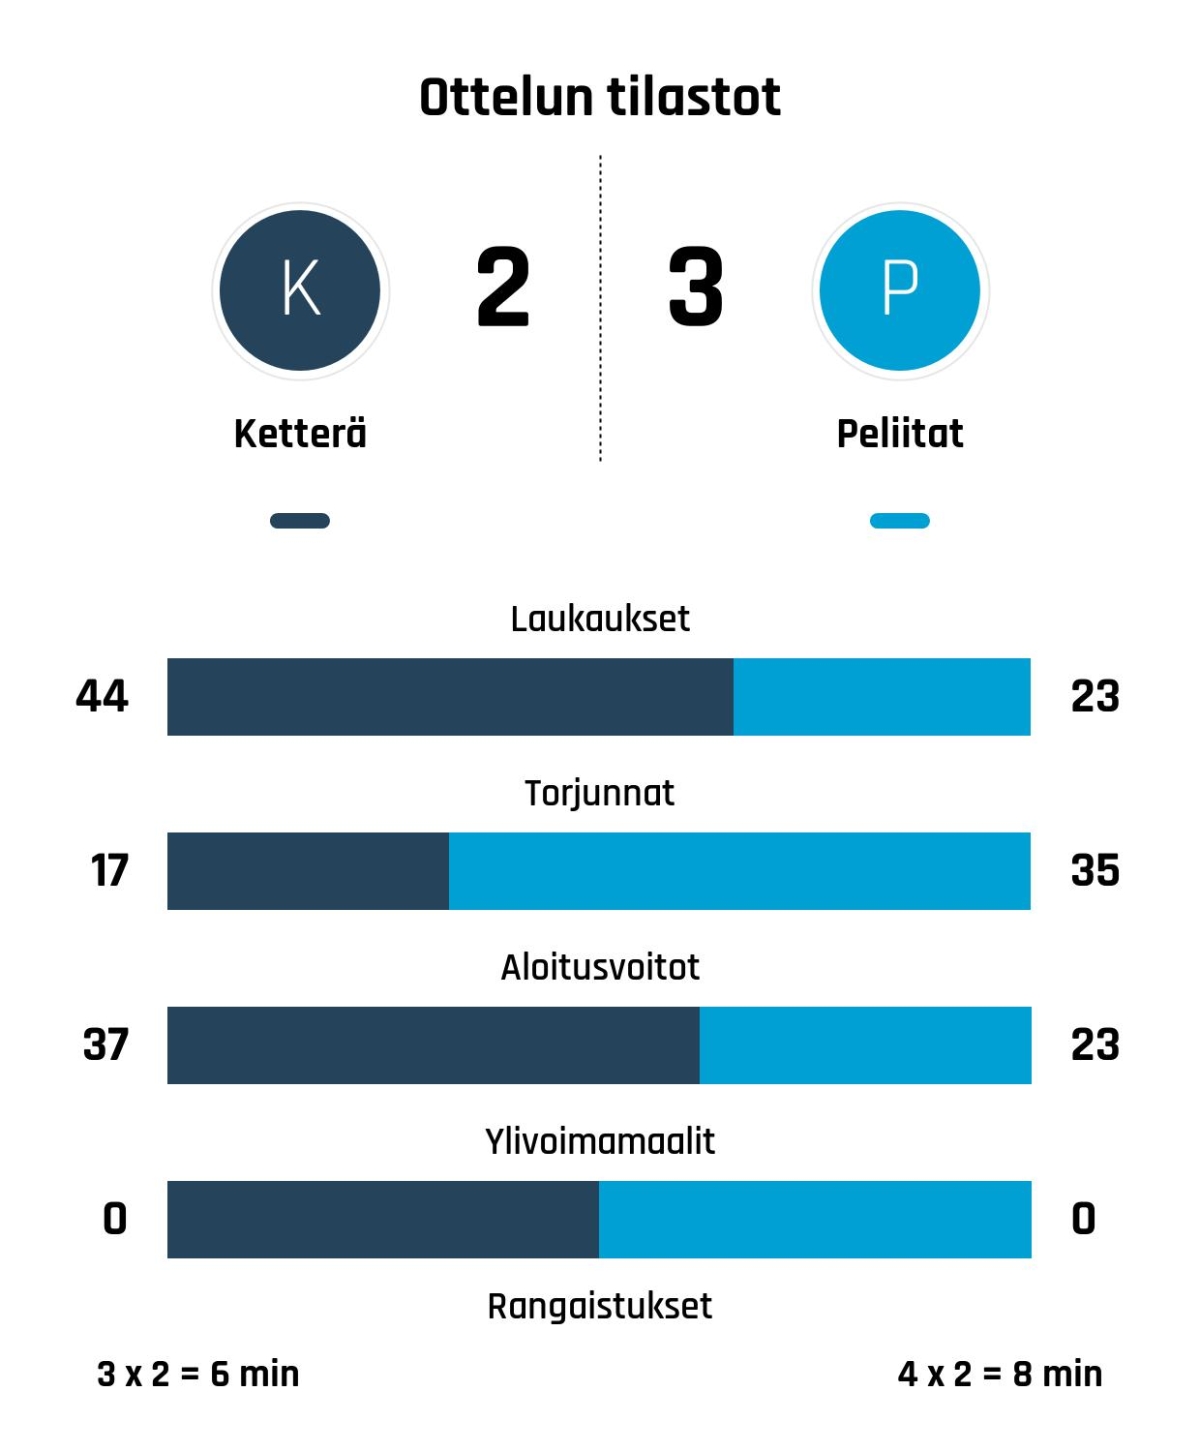 Peliitat nousi rinnalle ja ohi – Ketterä kaatui 3-2